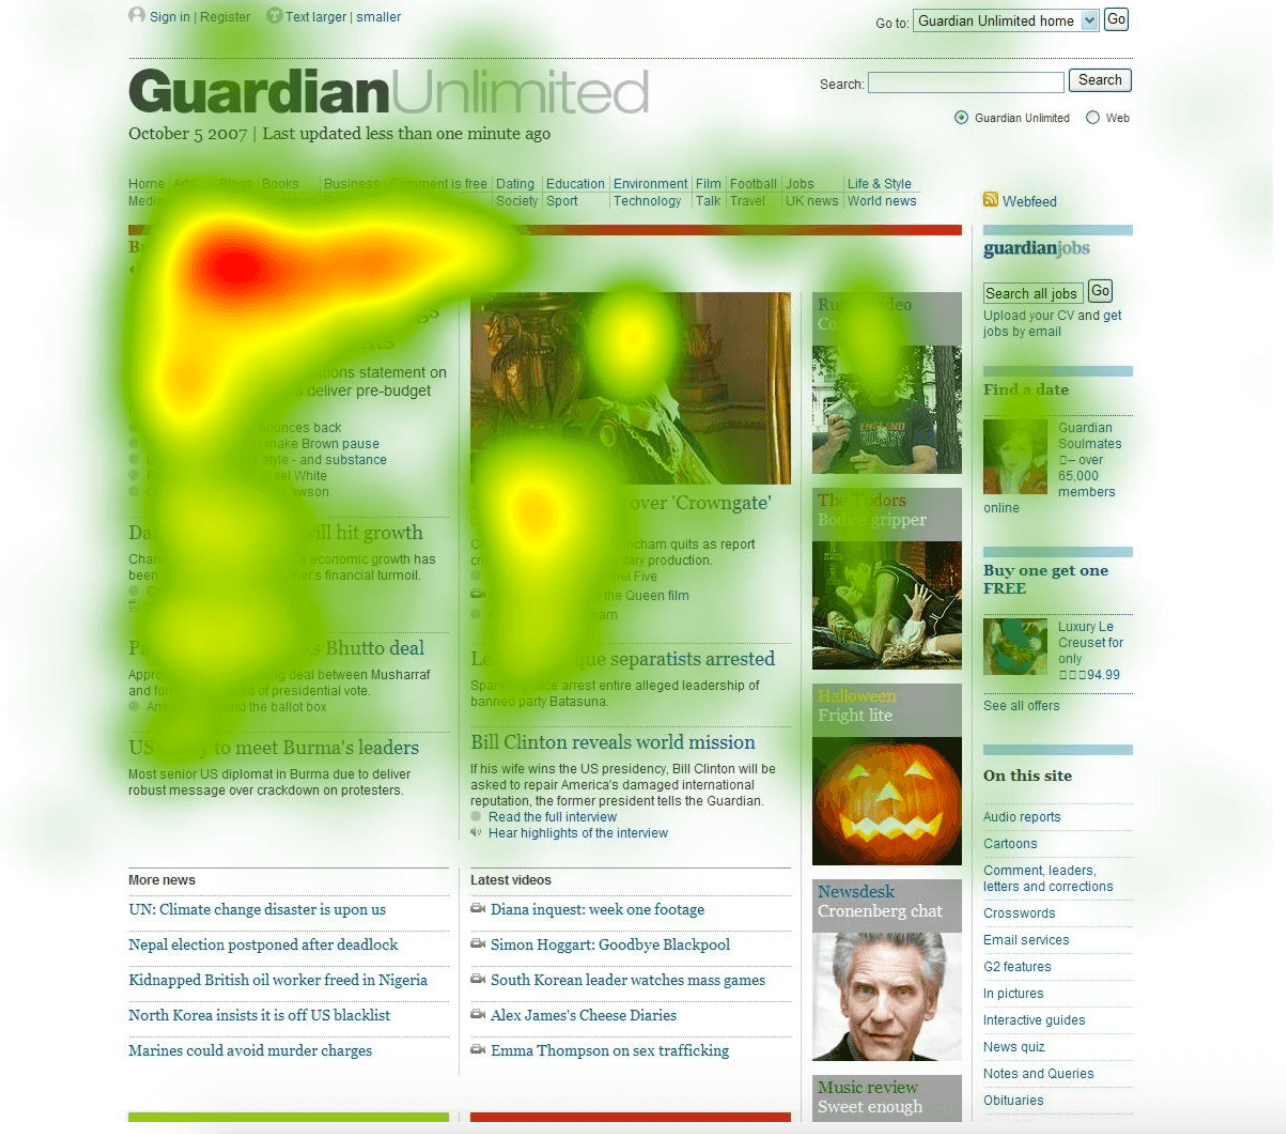 Скриншот тепловой карты от Guardian, показывающий наибольшую активность в начале статьи.